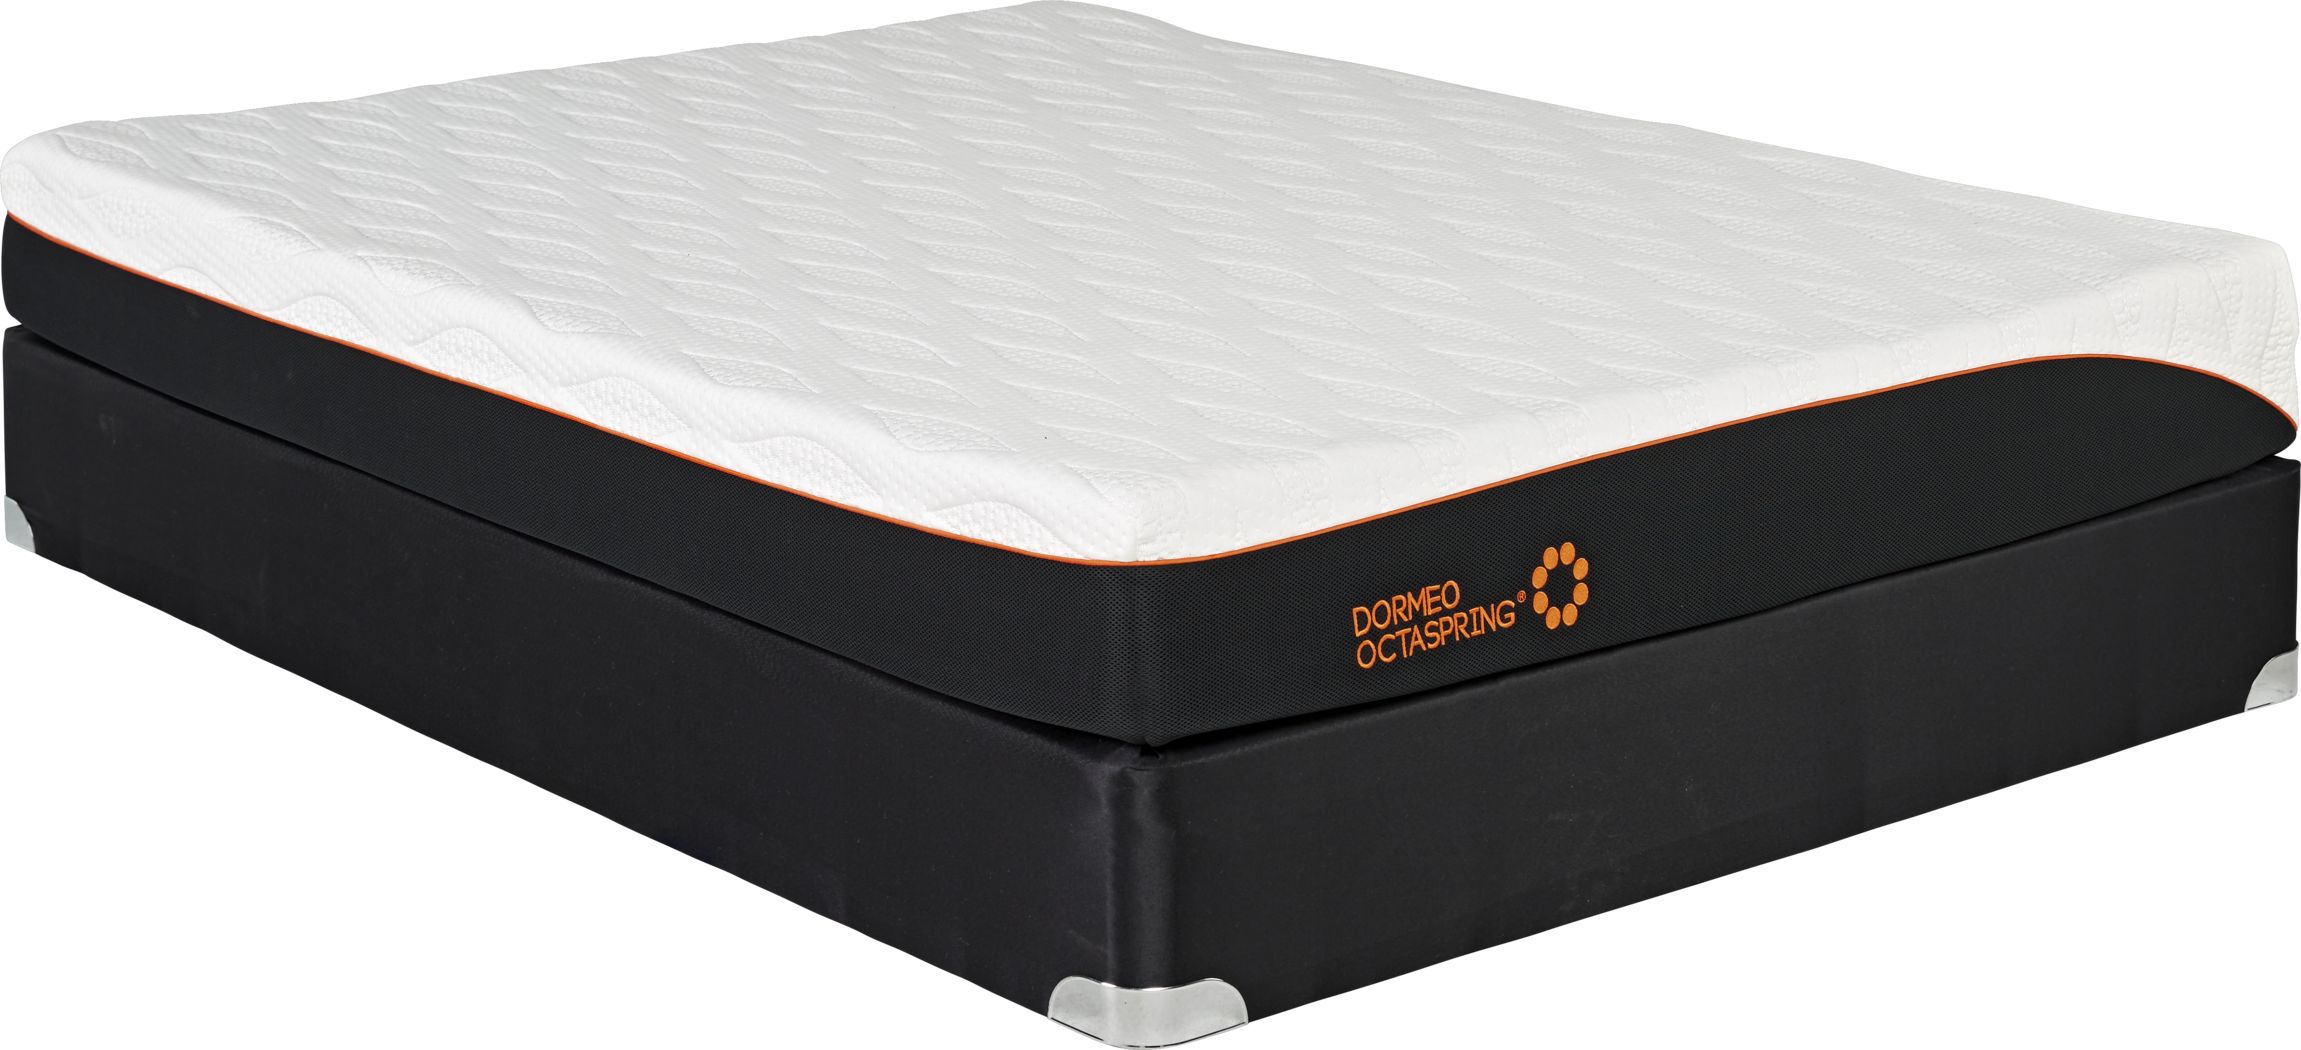 dormeo queen mattress model 5700